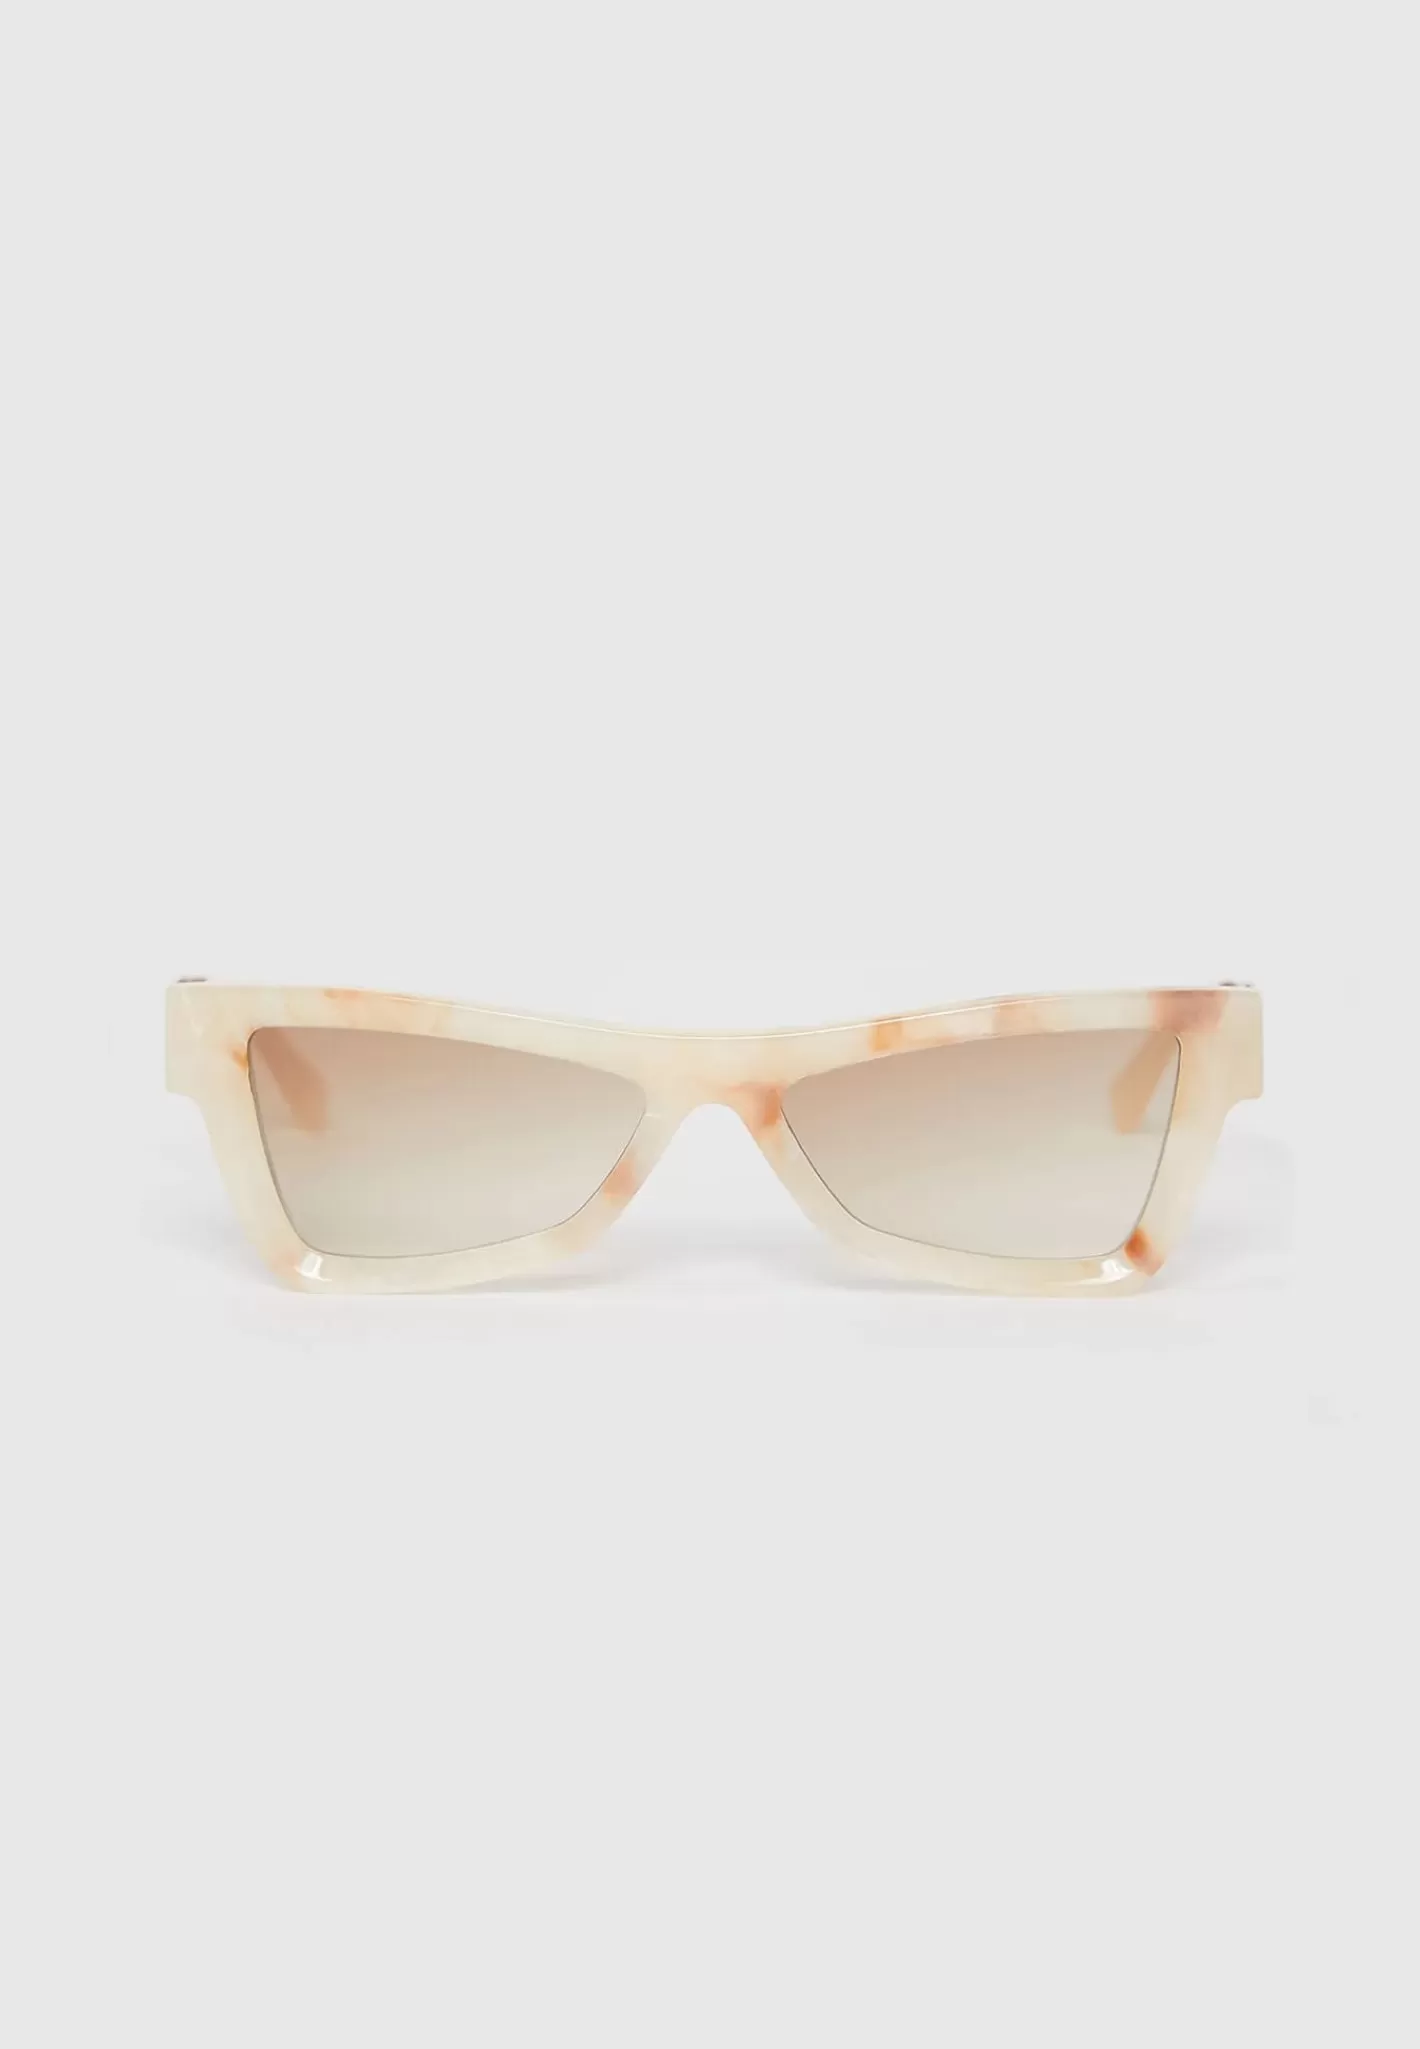 Corsica Sunglasses - Marble-Manière De Voir Flash Sale